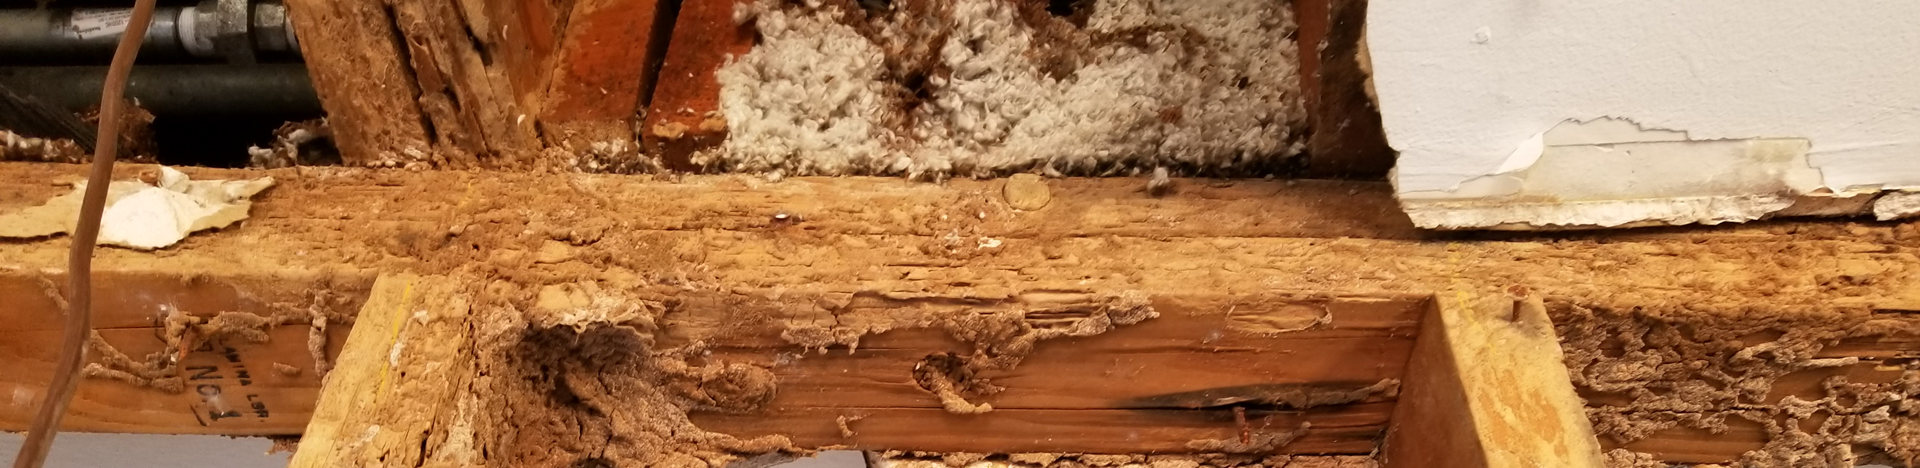 Termite Removal Cost in Phoenix